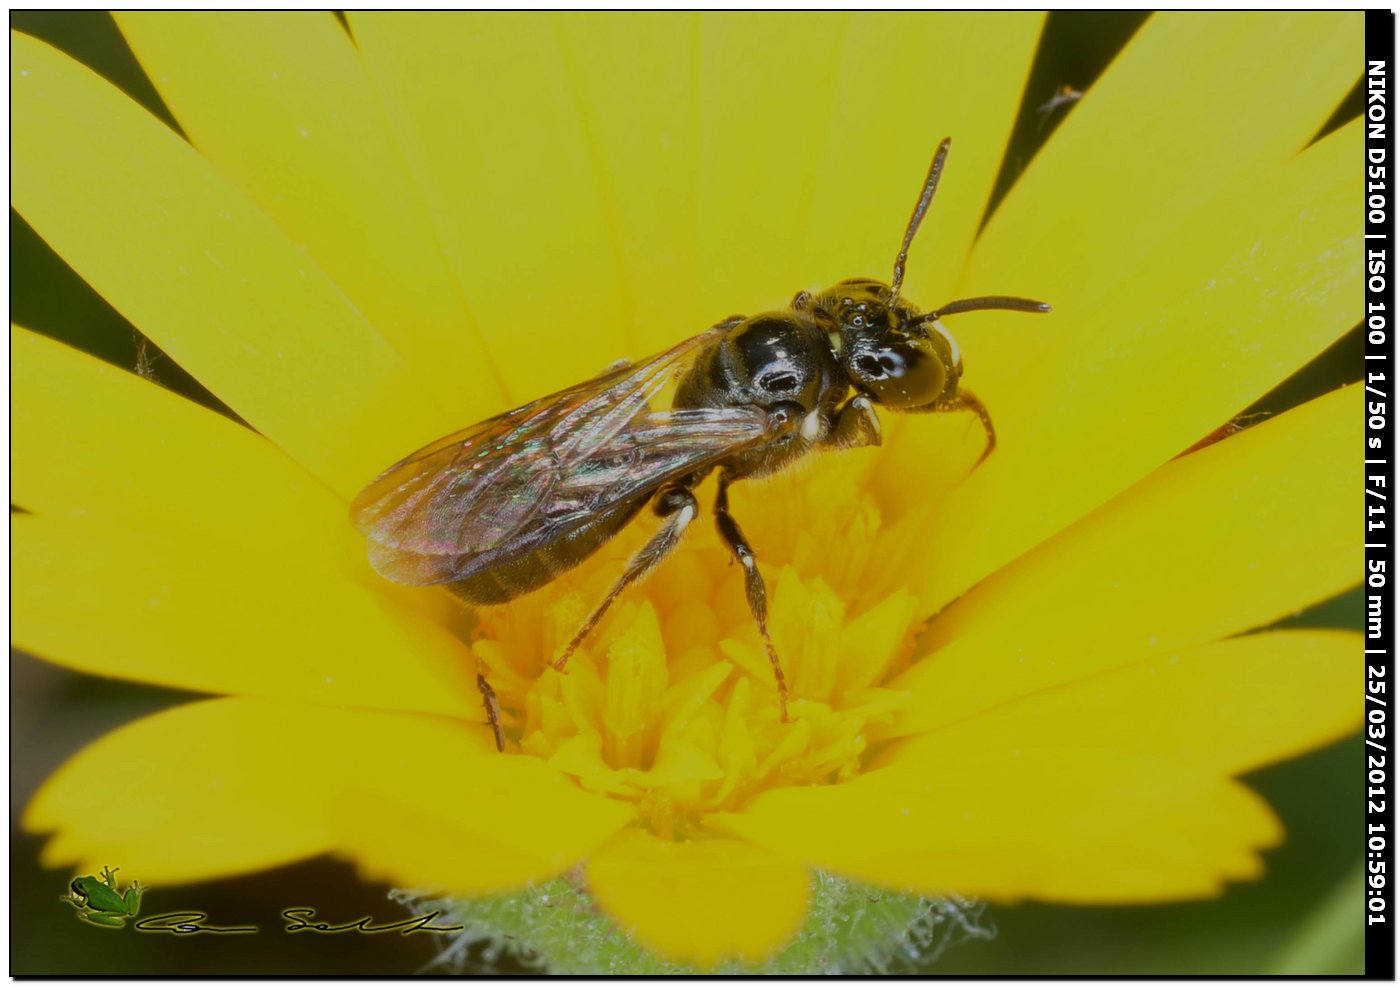 Apina da id.: Ceratina cucurbitina ♂ (Apidae)